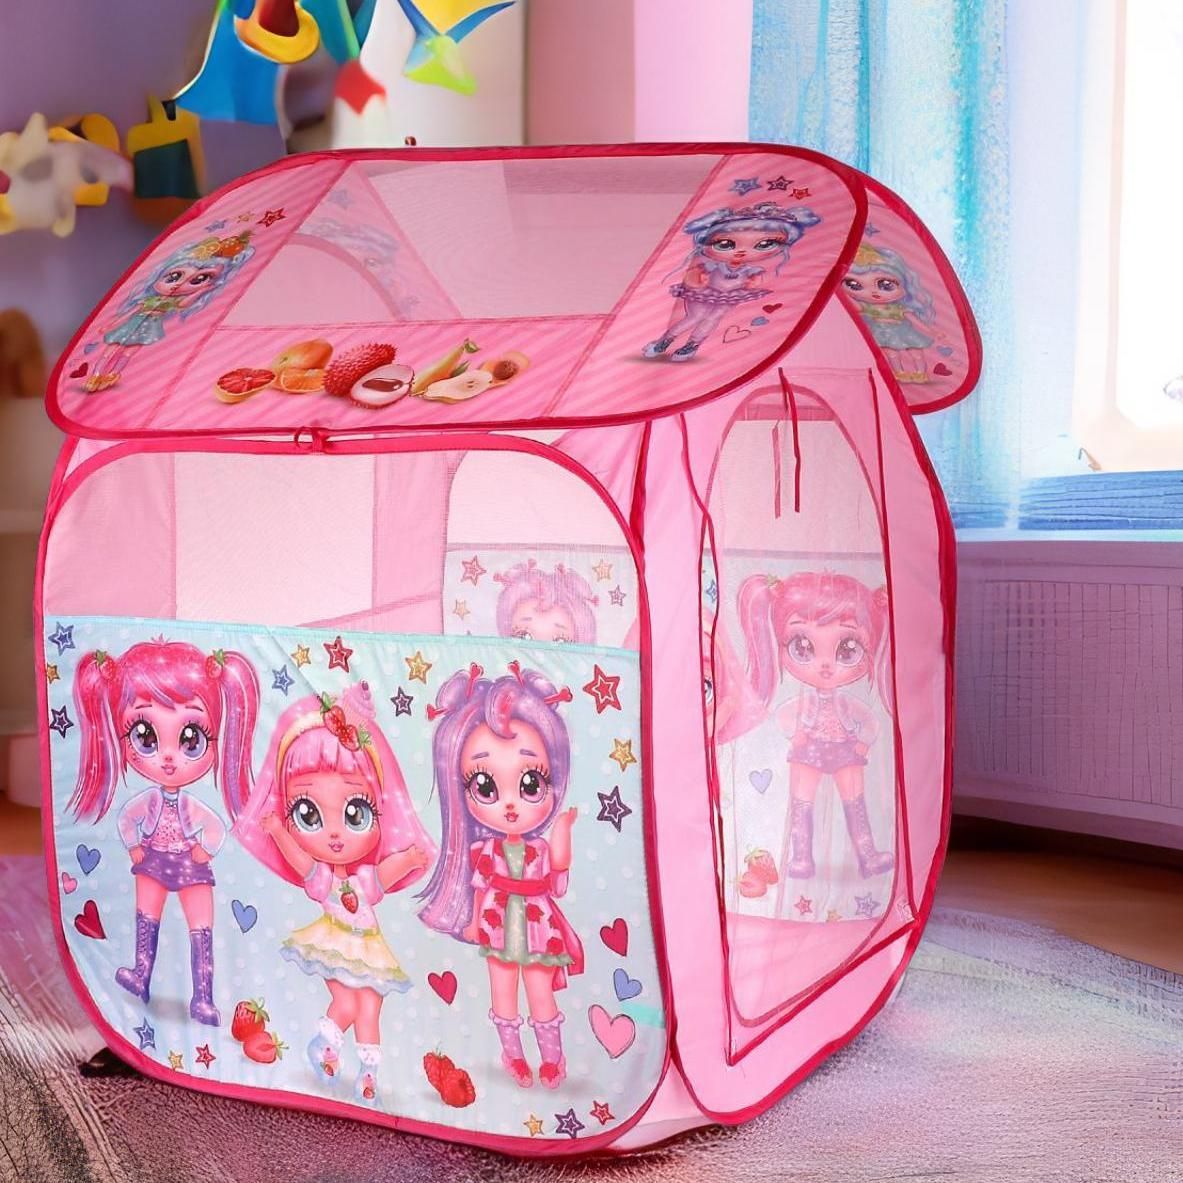 Палатка детская игровая - Барби в сумке